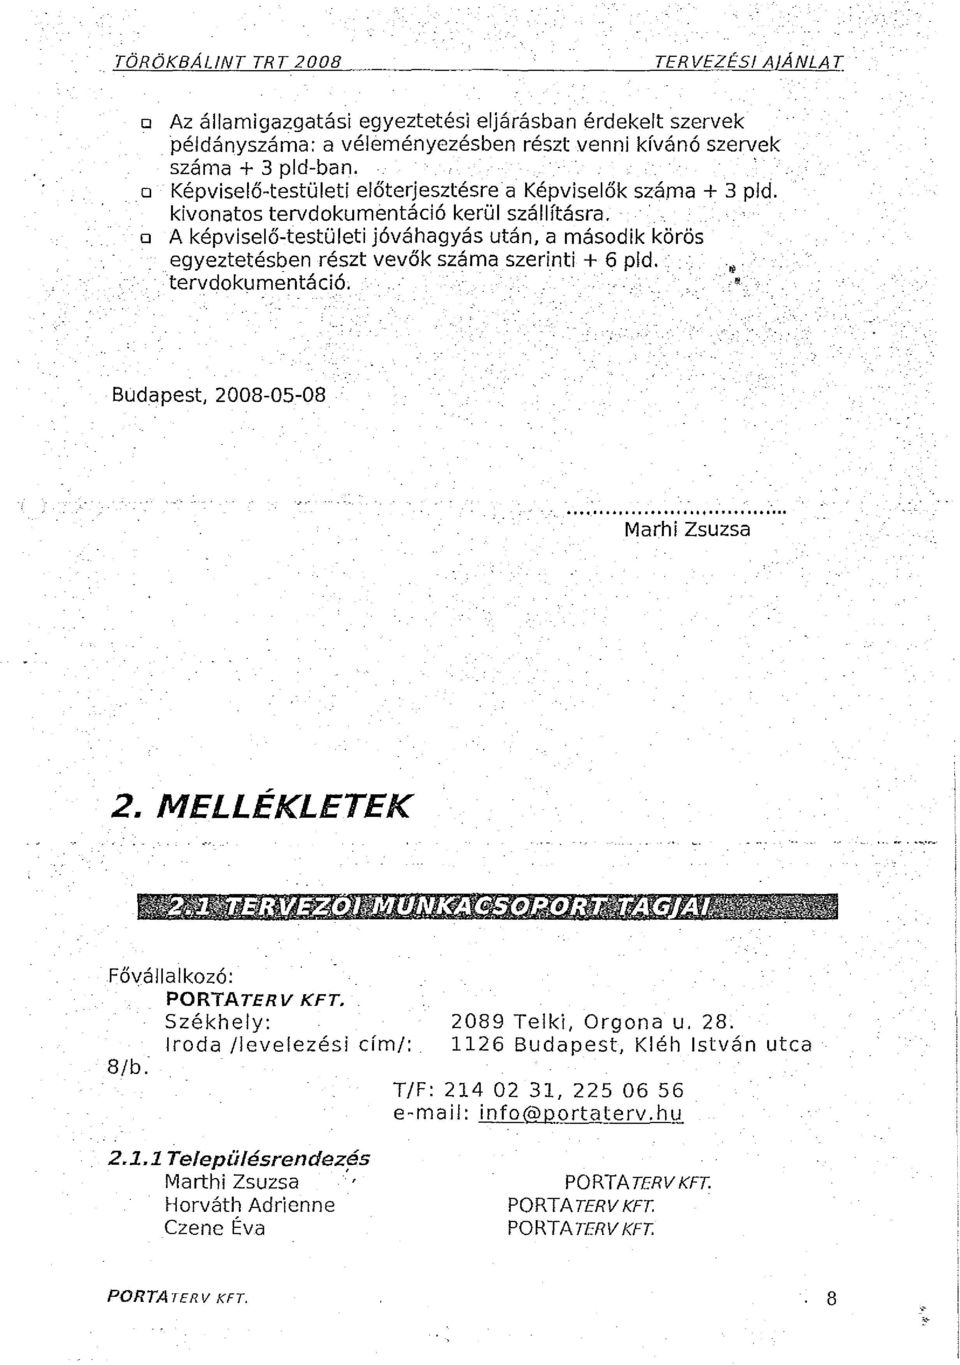 ' D A képviselő-testületi jóváhagyás után, a második körös egyeztetésben részt vevők száma szerinti + 6 pid. ", "'., tervdokumentáció. ' ' '. Budapest, 2008-05-08 - -....,.... Marhi Zsuzsa 2.